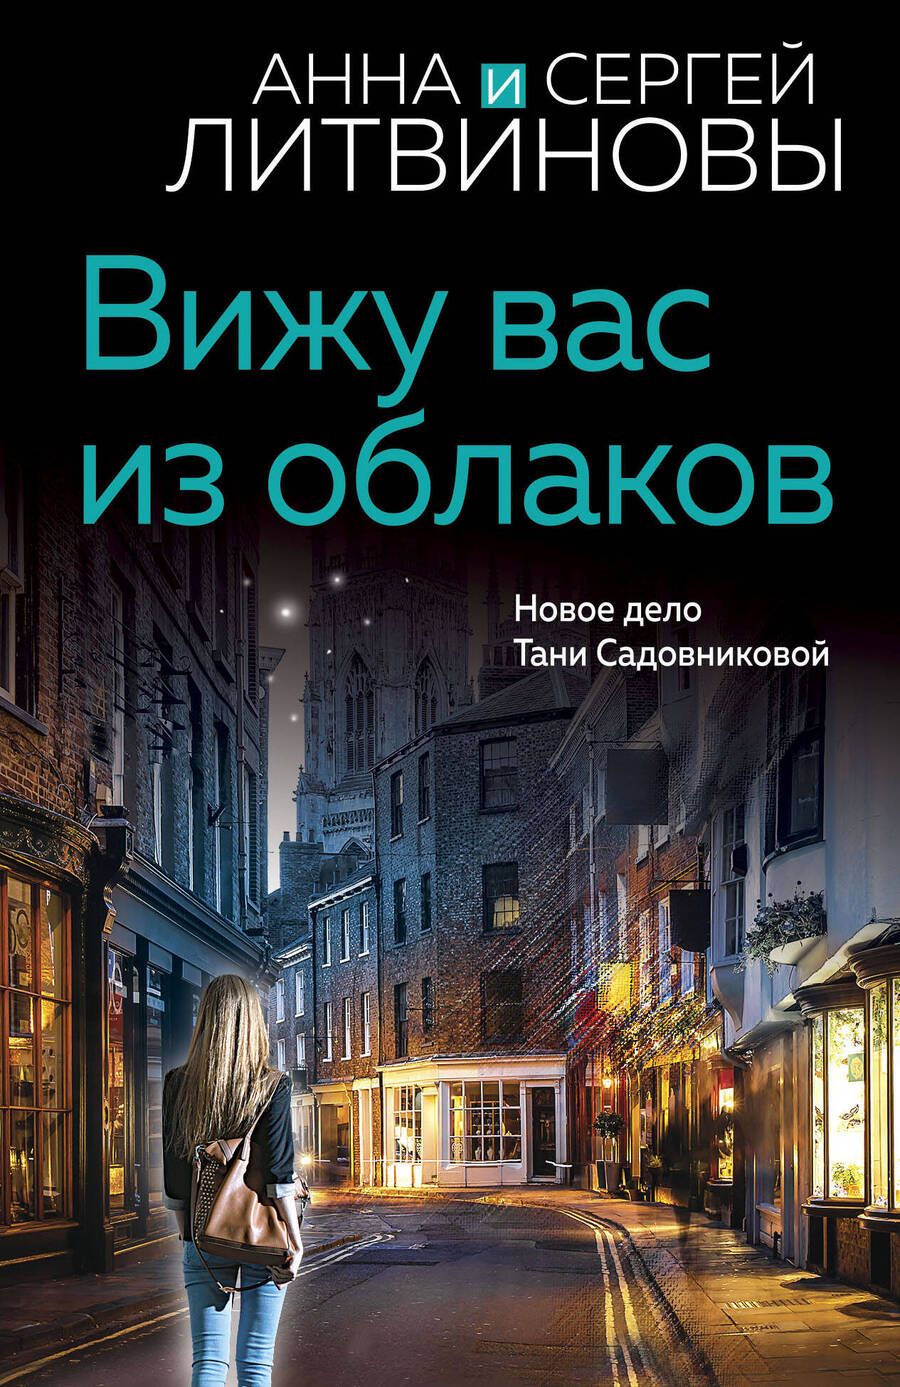 Обложка книги "Литвинова, Литвинов: Вижу вас из облаков"